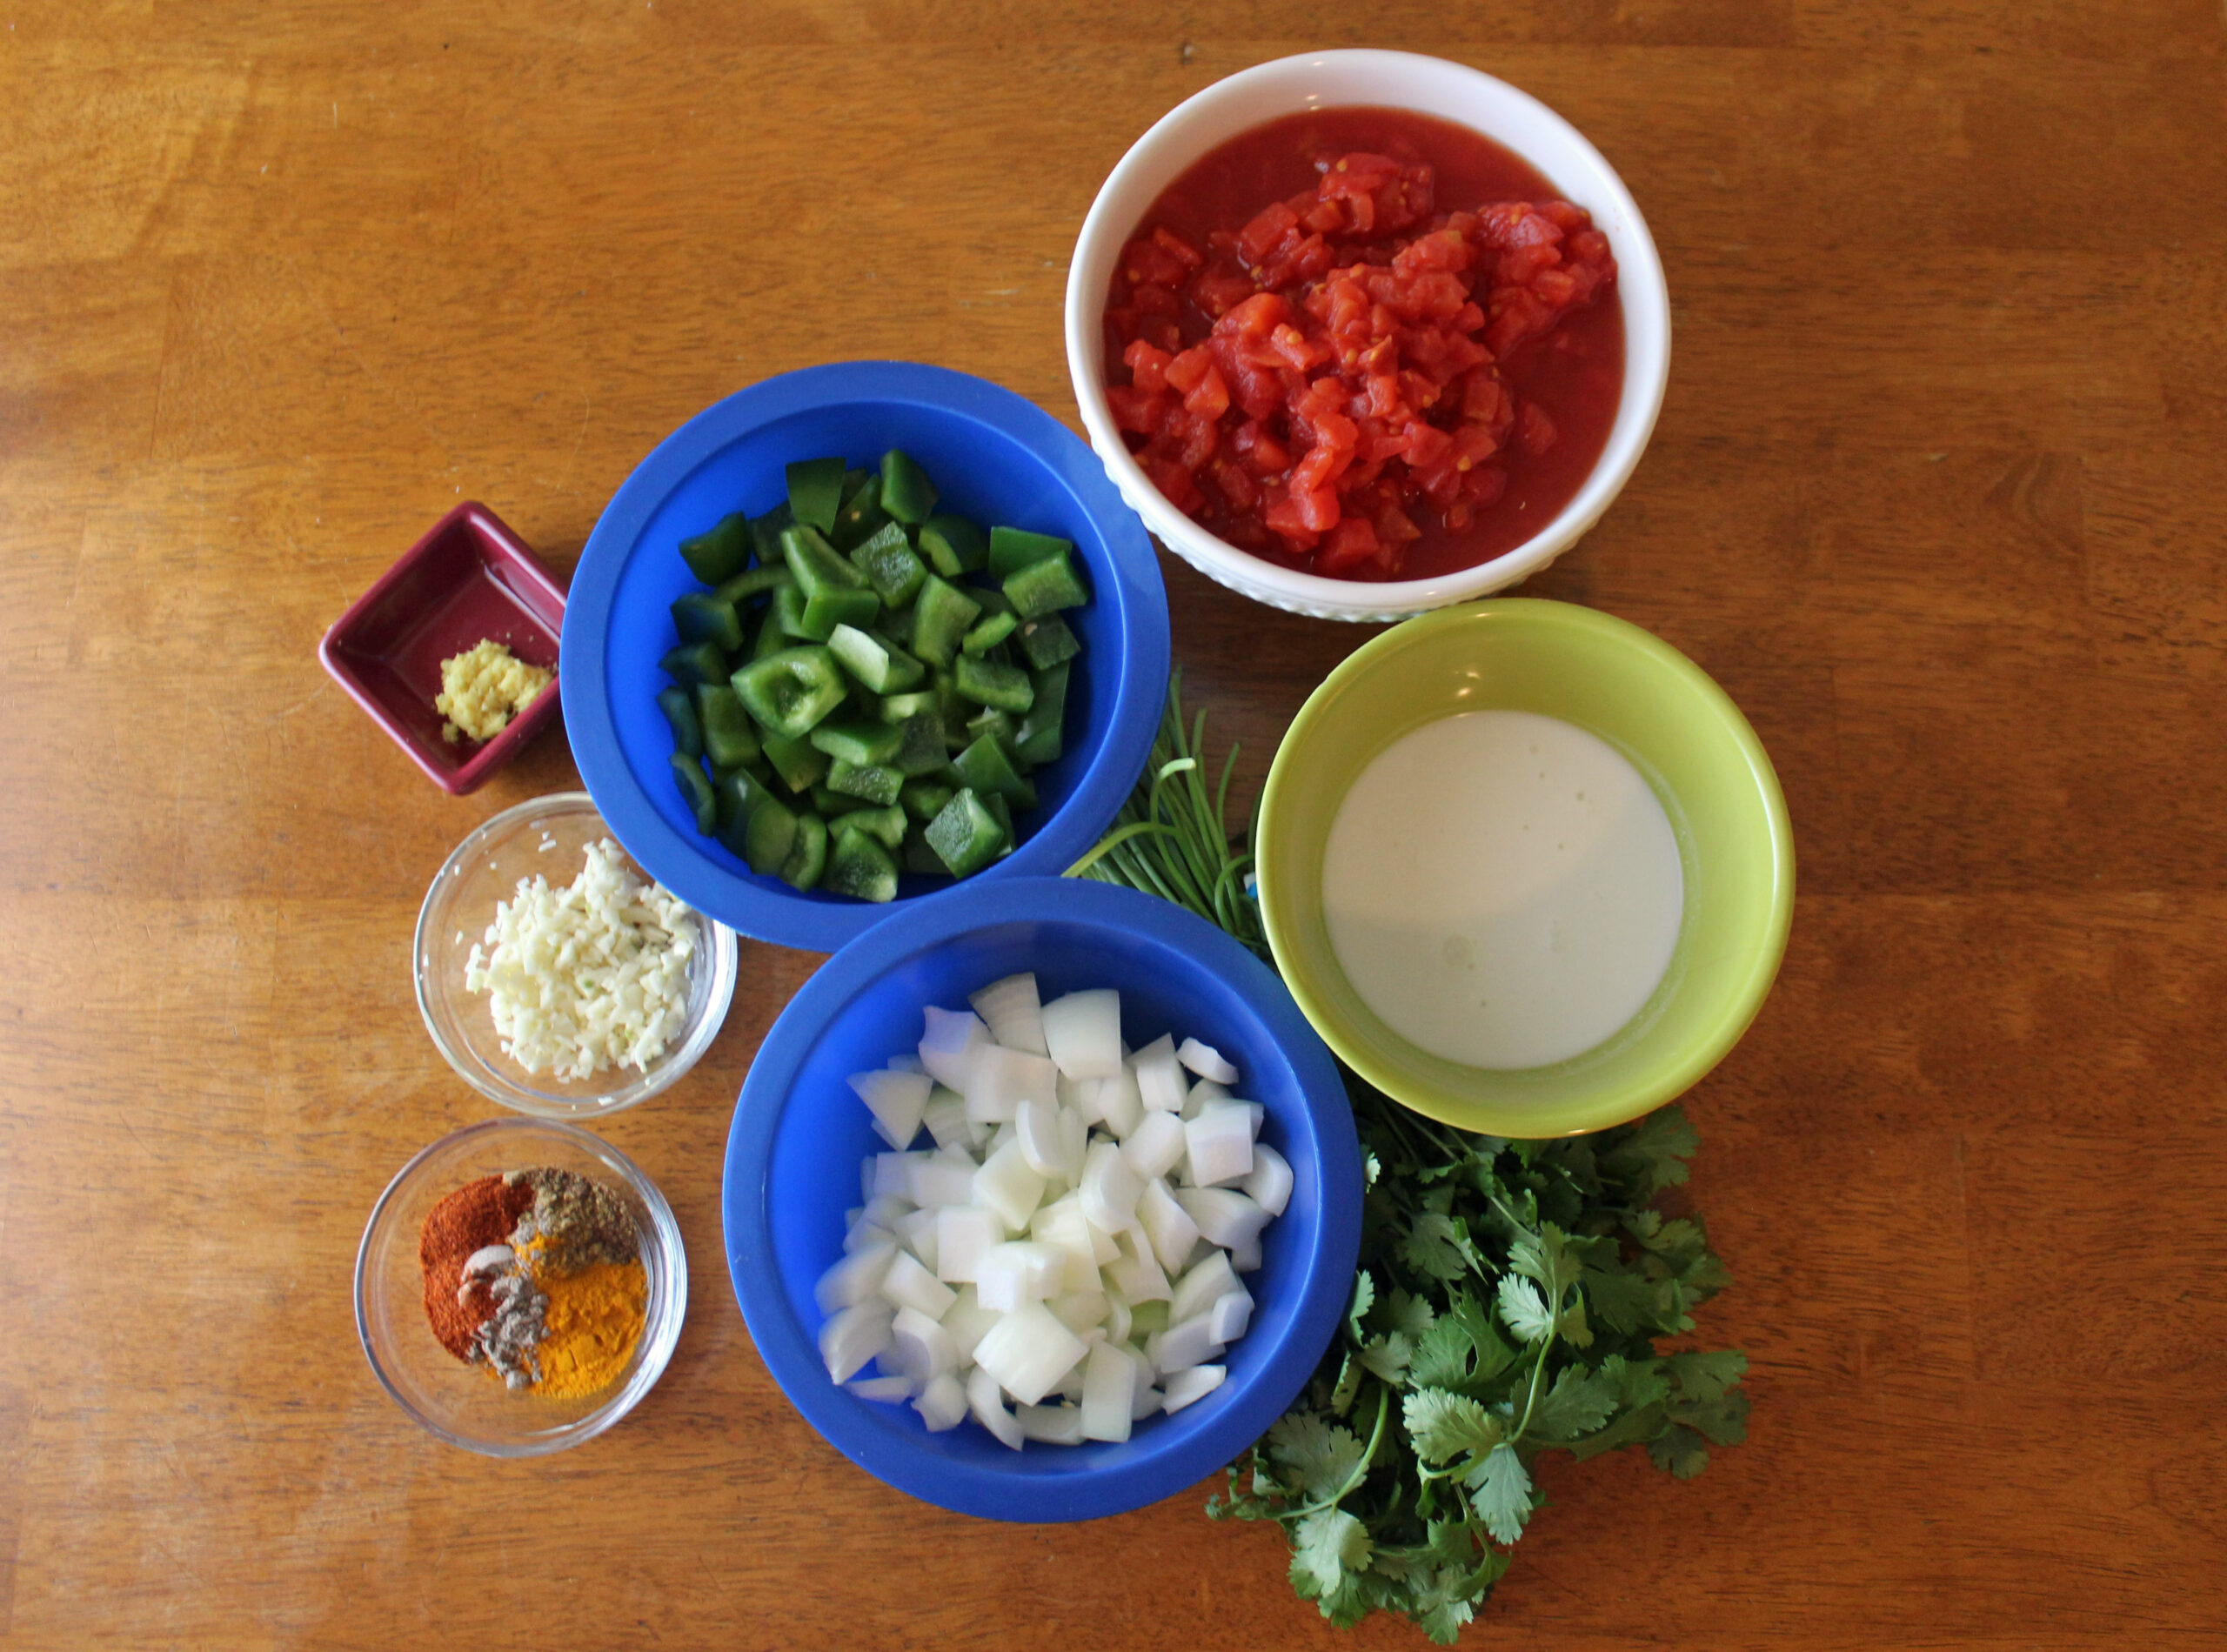 Ingredients for Bridget Jones's Turkey Curry